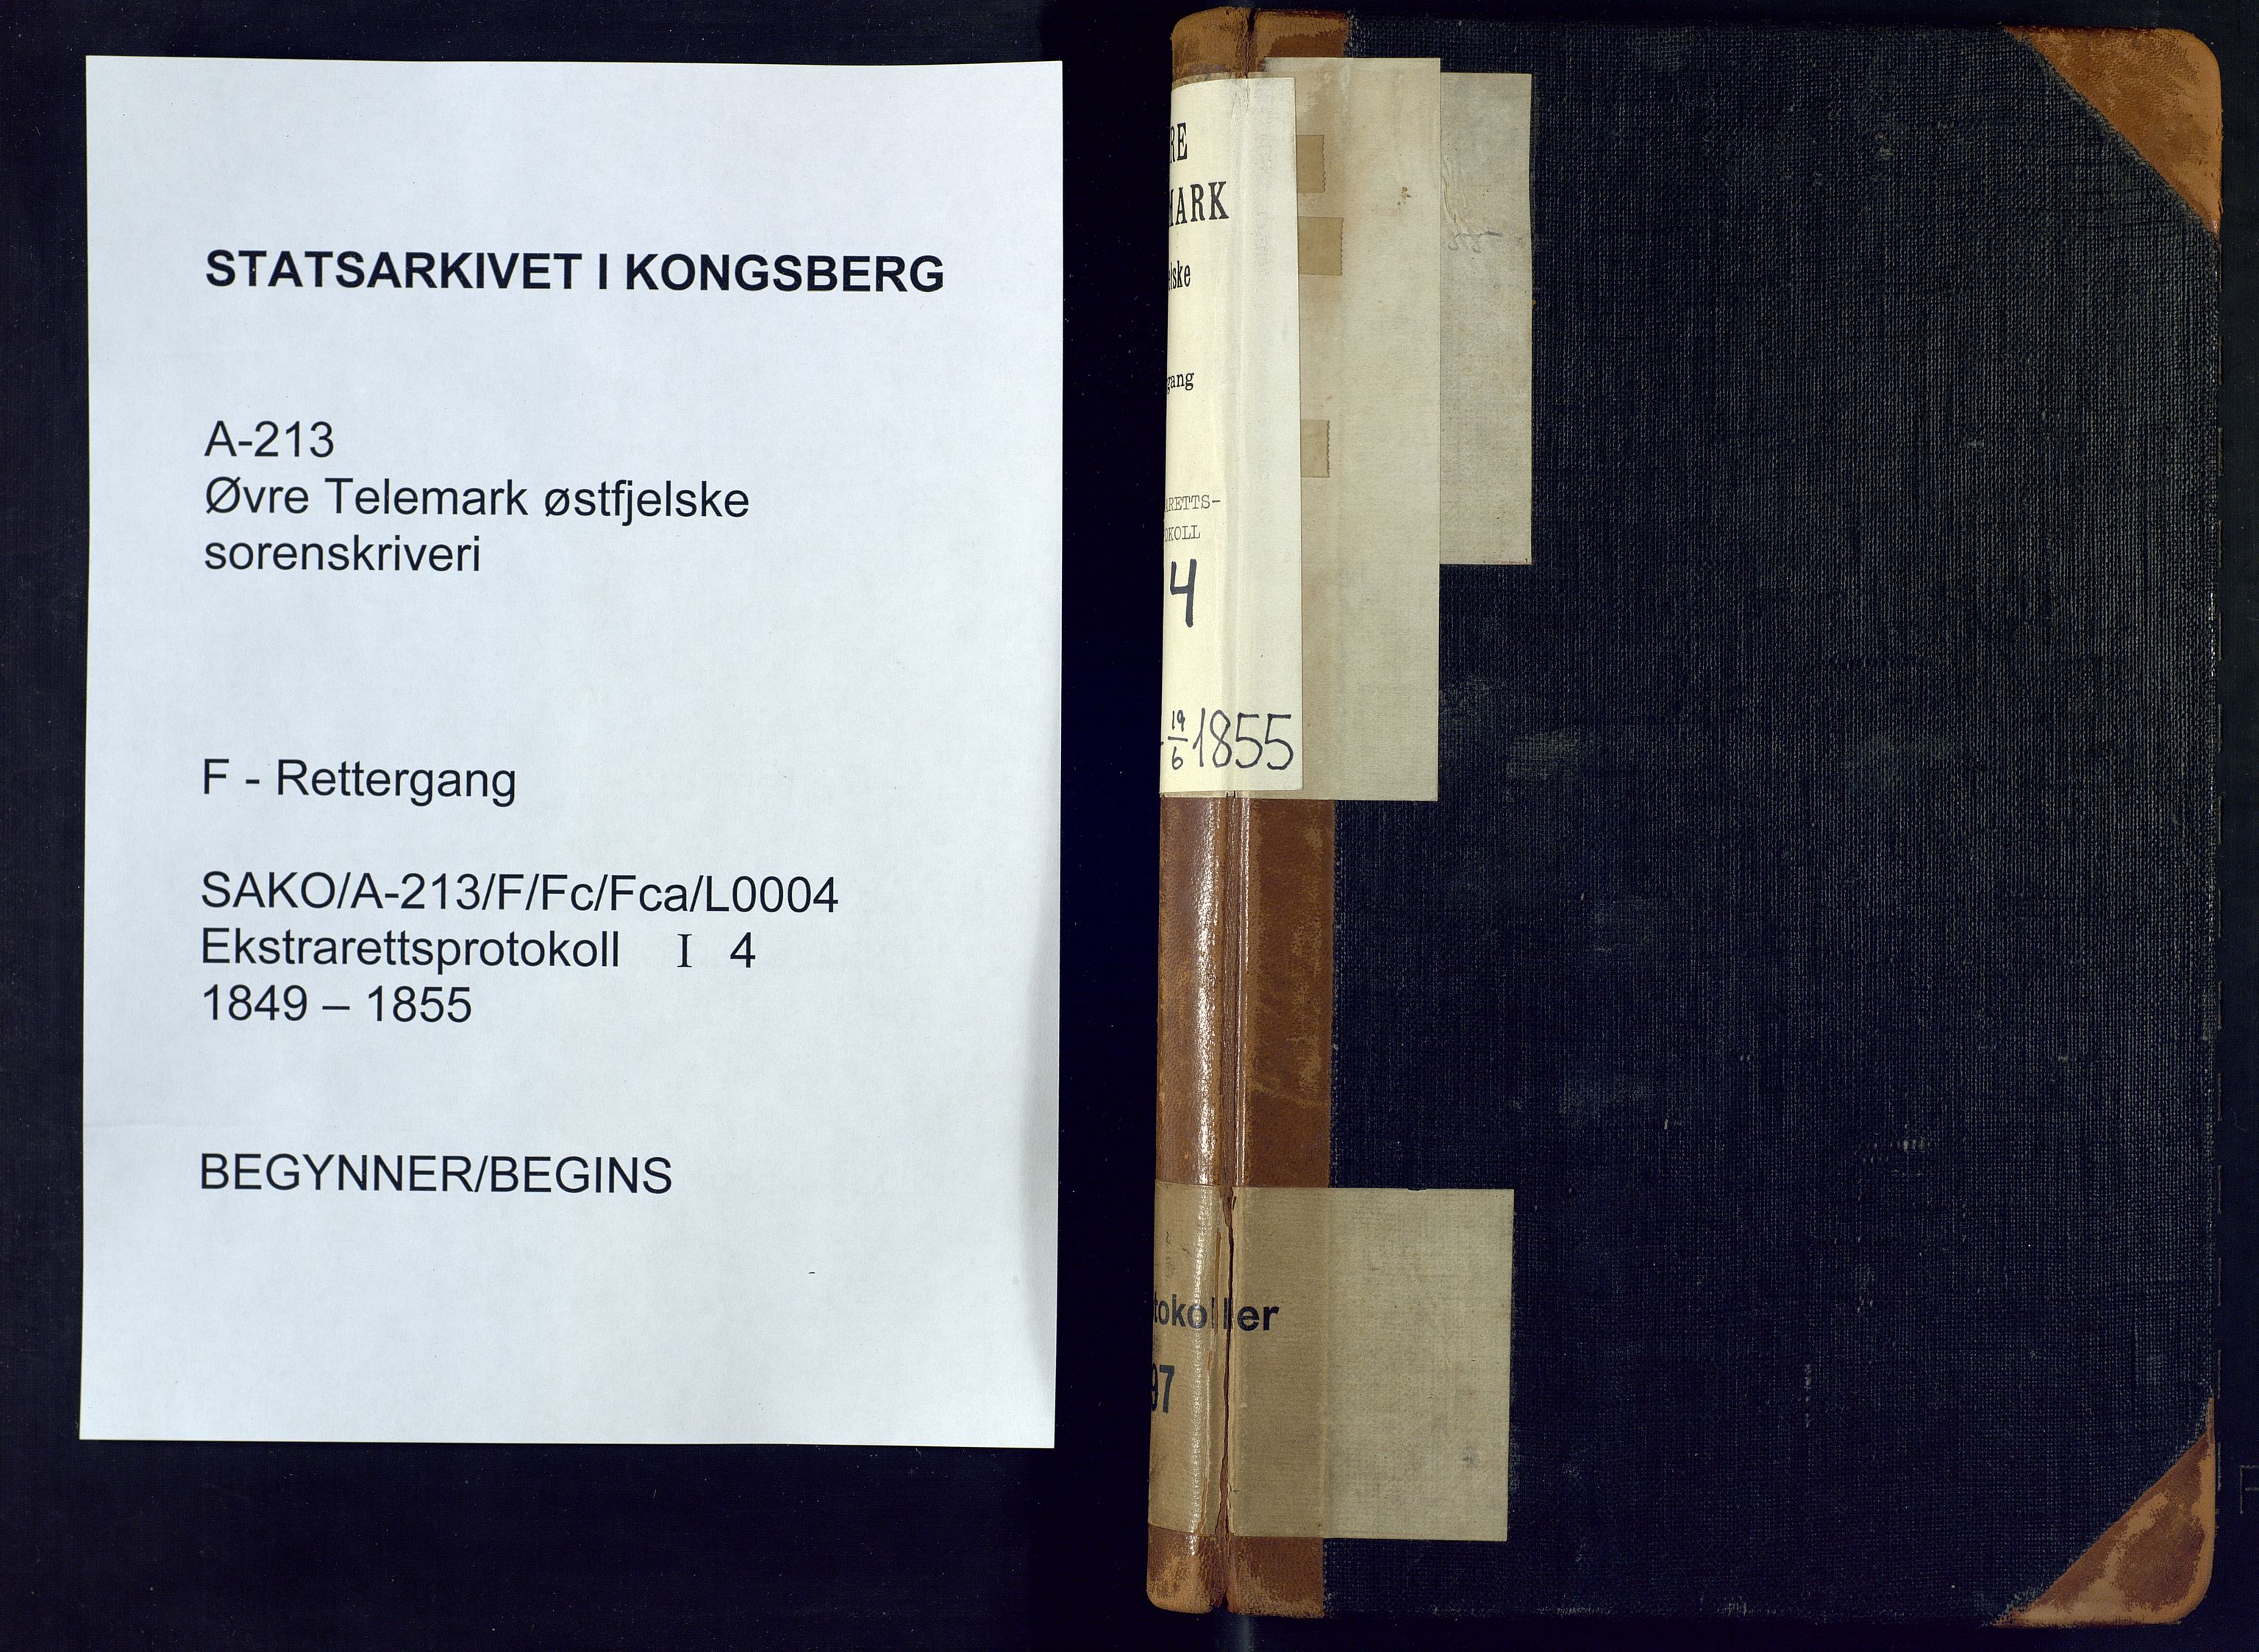 Øvre Telemark østfjelske sorenskriveri, SAKO/A-213/F/Fc/Fca/L0004: Ekstrarettsprotokoll, sivile saker, 1849-1855